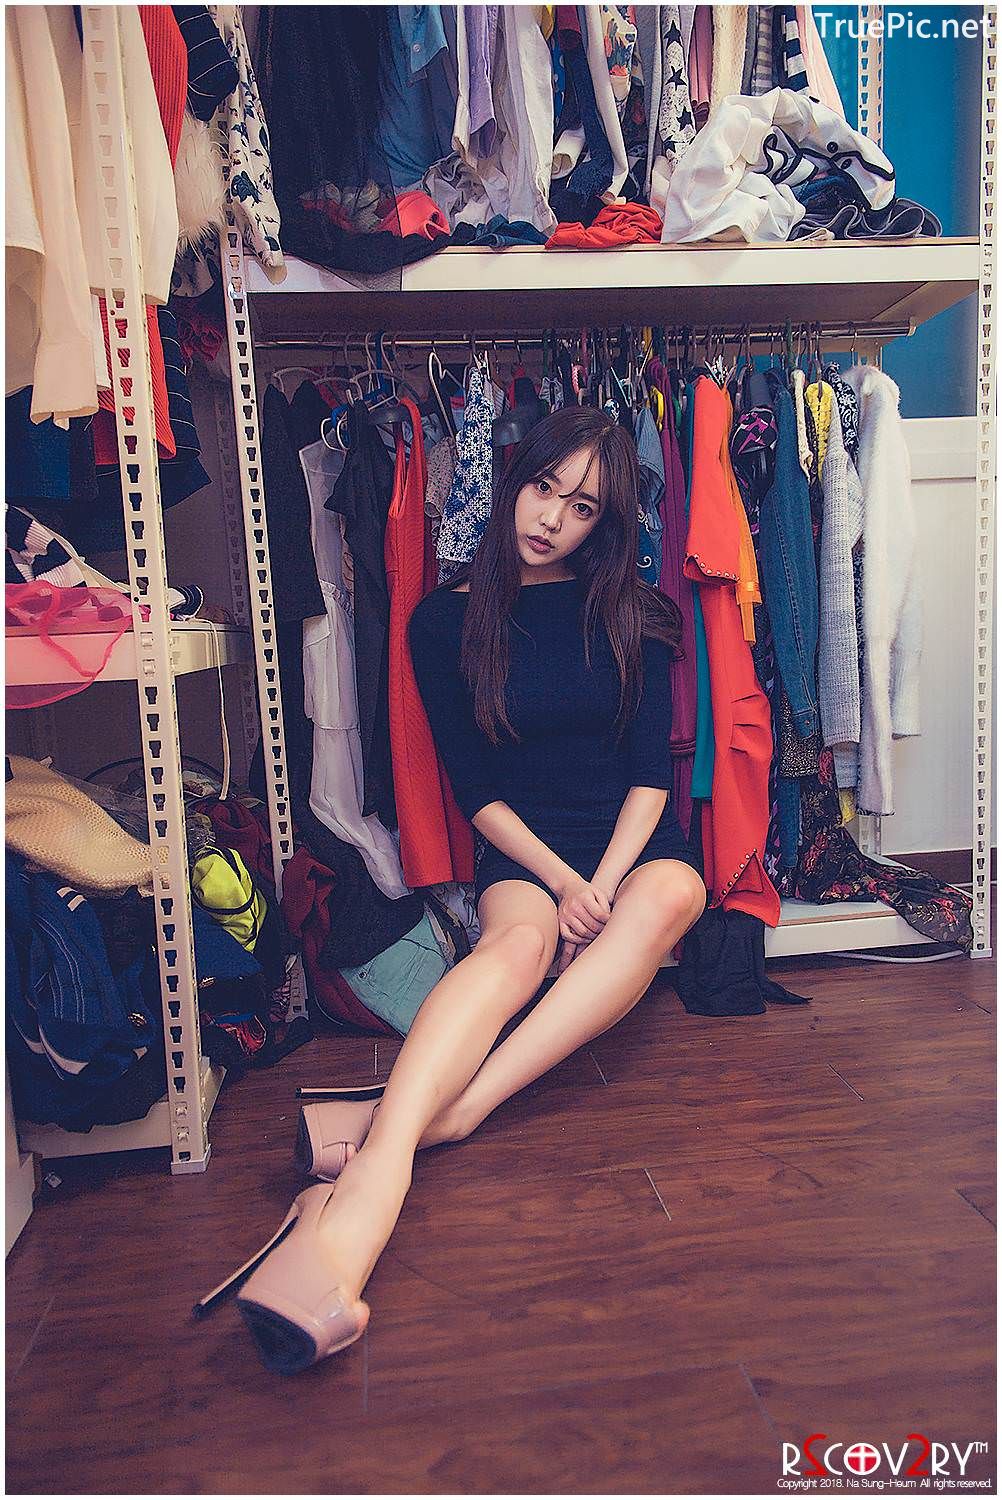 Image-Korean-Hot-Model-Go-Eun-Yang-Indoor-Photoshoot-Collection-TruePic.net- Picture-32